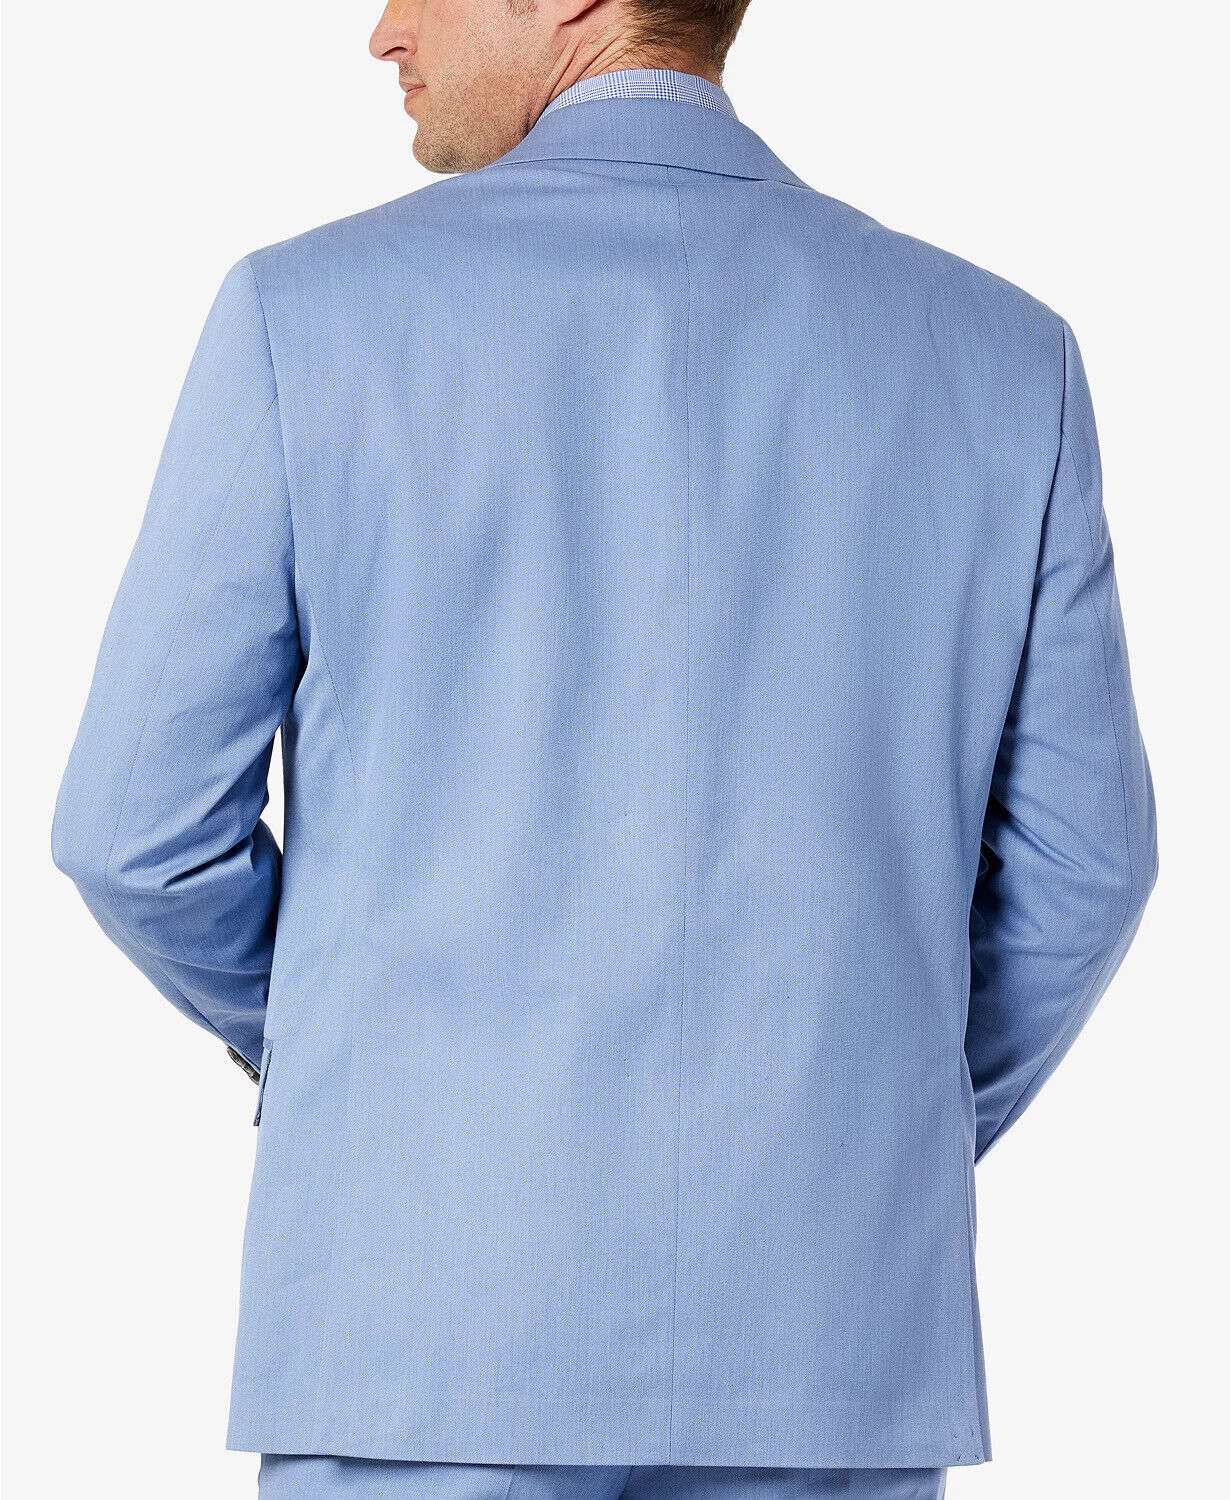 Sean John Men's Classic-Fit Solid Suit Jacket Light Blue 36R